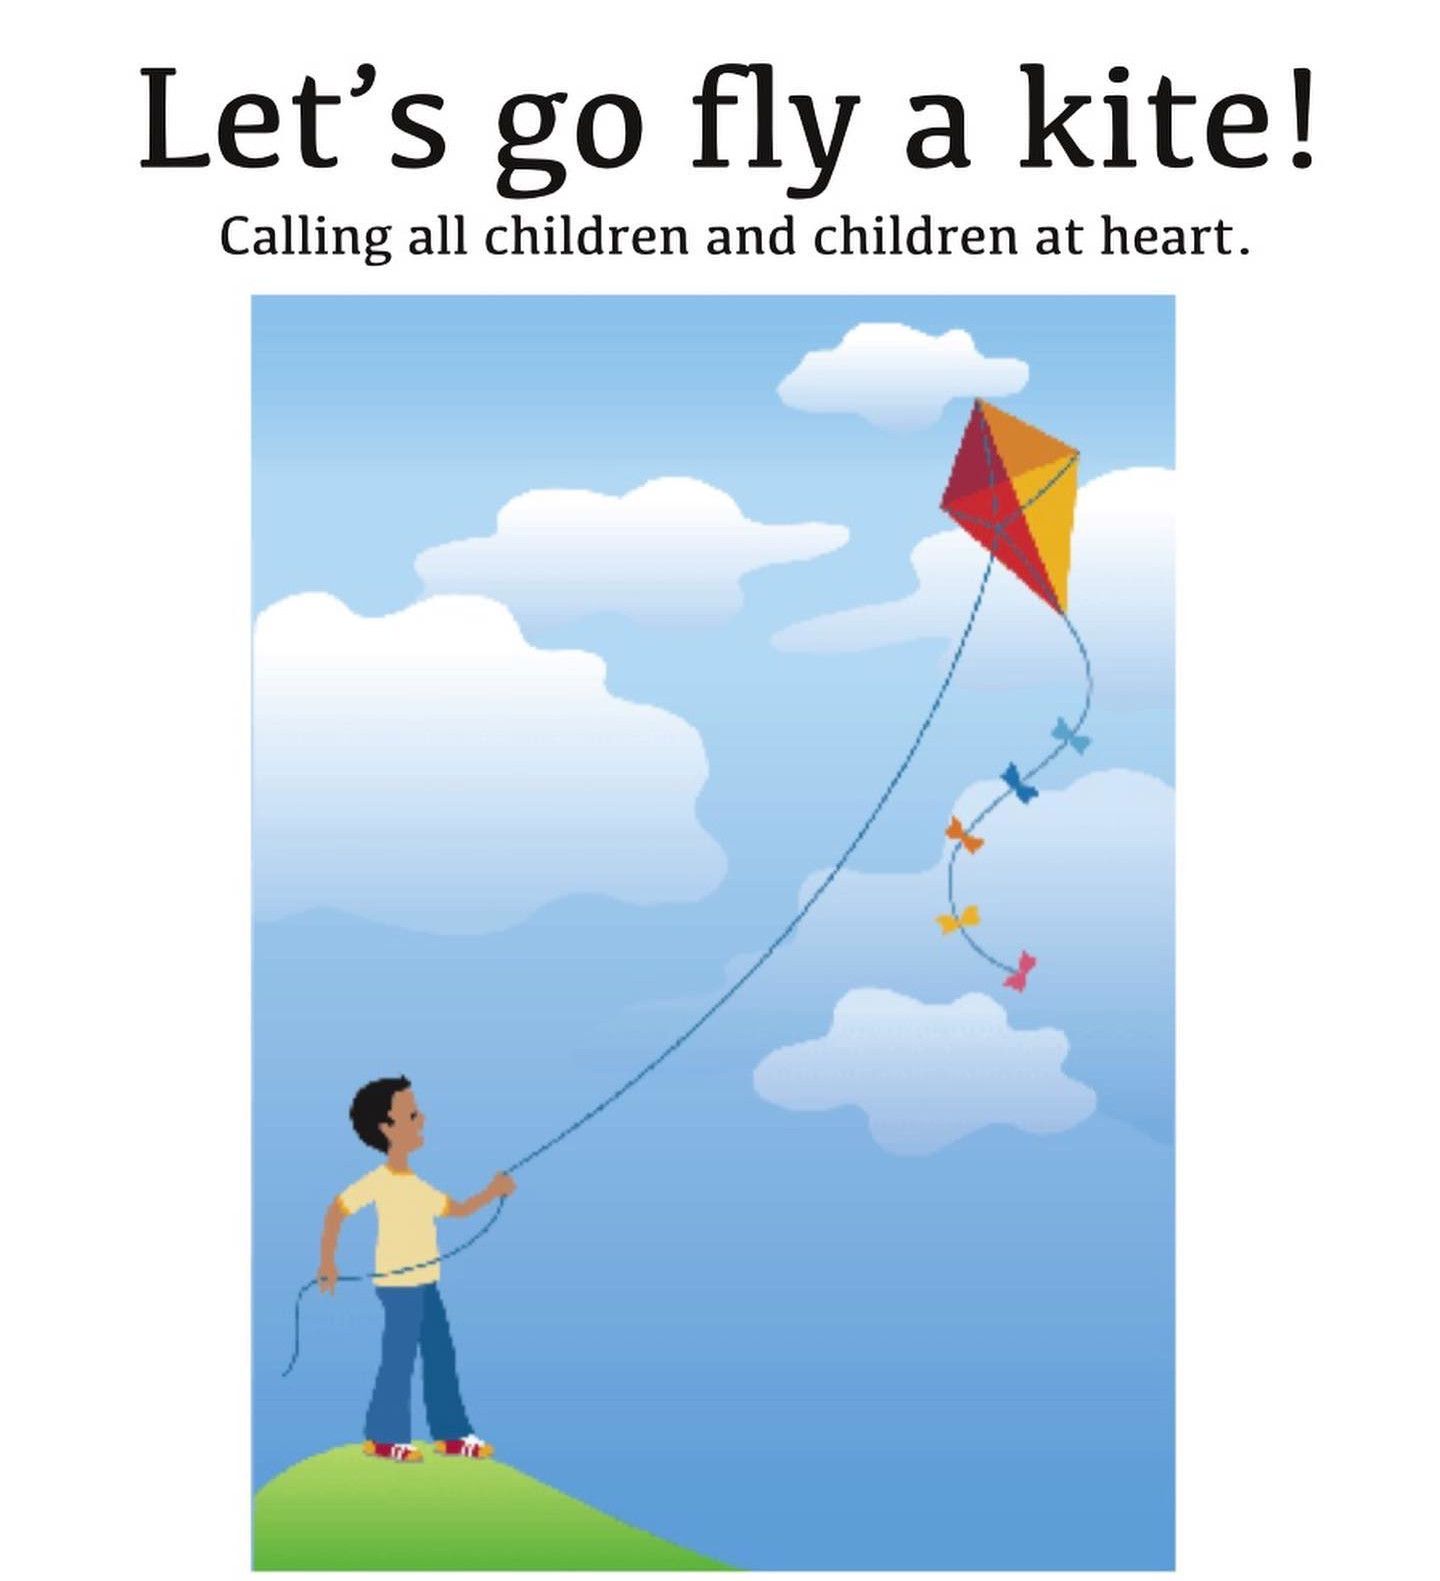 Kite Flying poster